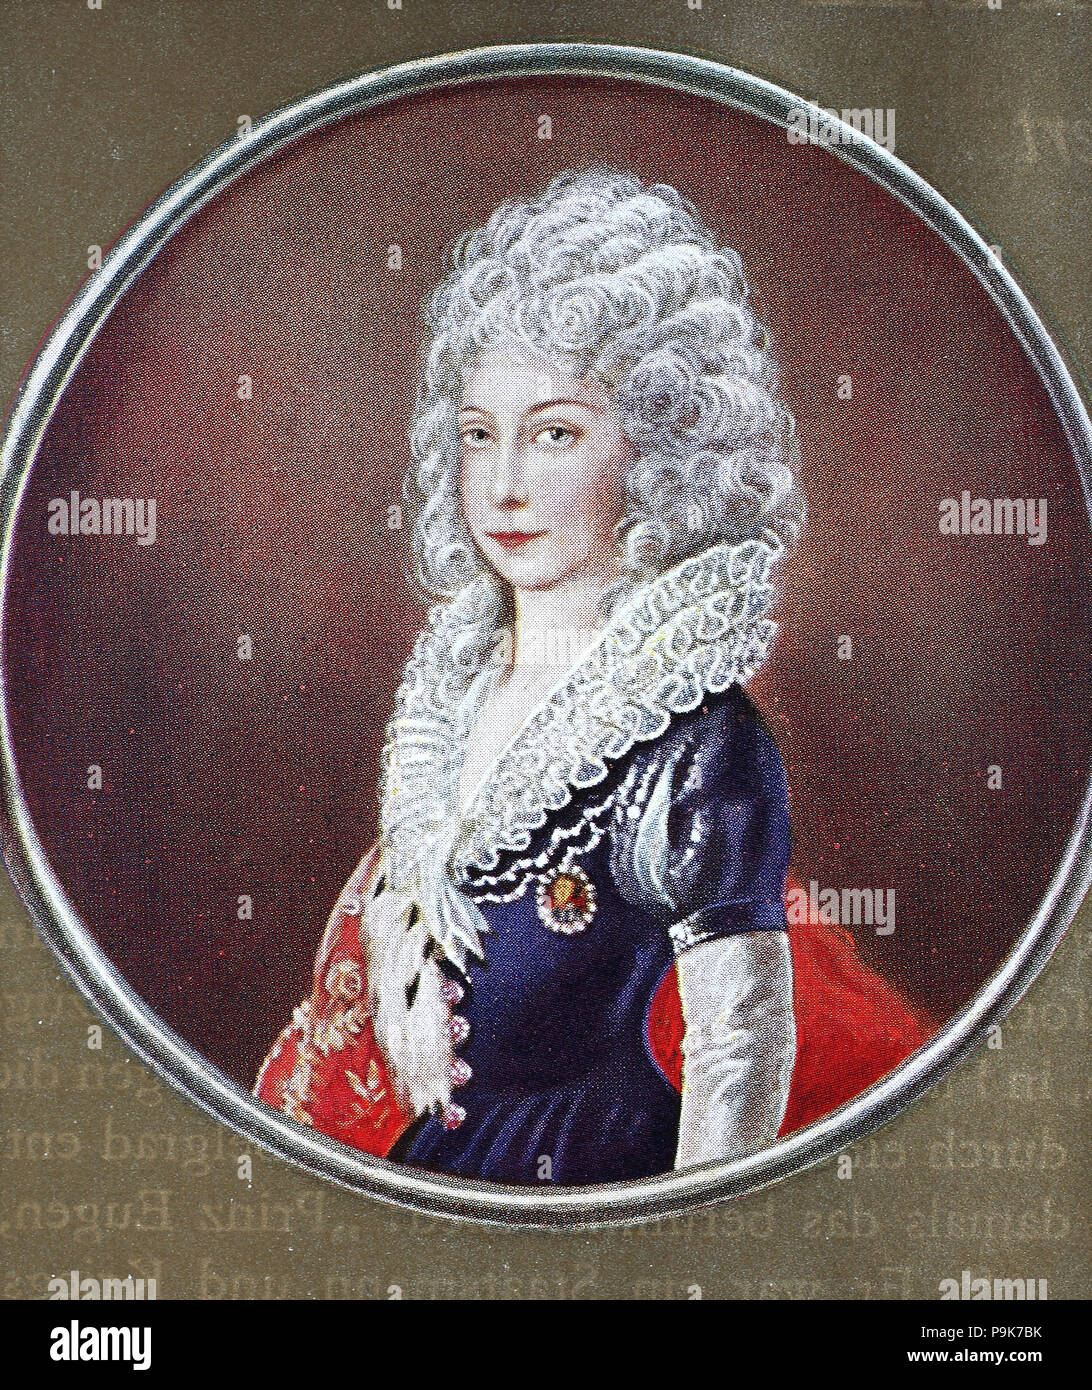 Maria Theresa Walburga Amalia Christina, Maria Theresia, 13 mai 1717 â€" 29 novembre 1780, a été la seule femme chef de la Habsburg dominions et la dernière de la maison de Habsbourg, l'amélioration numérique reproduction d'une estampe originale de l'année 1900 Banque D'Images